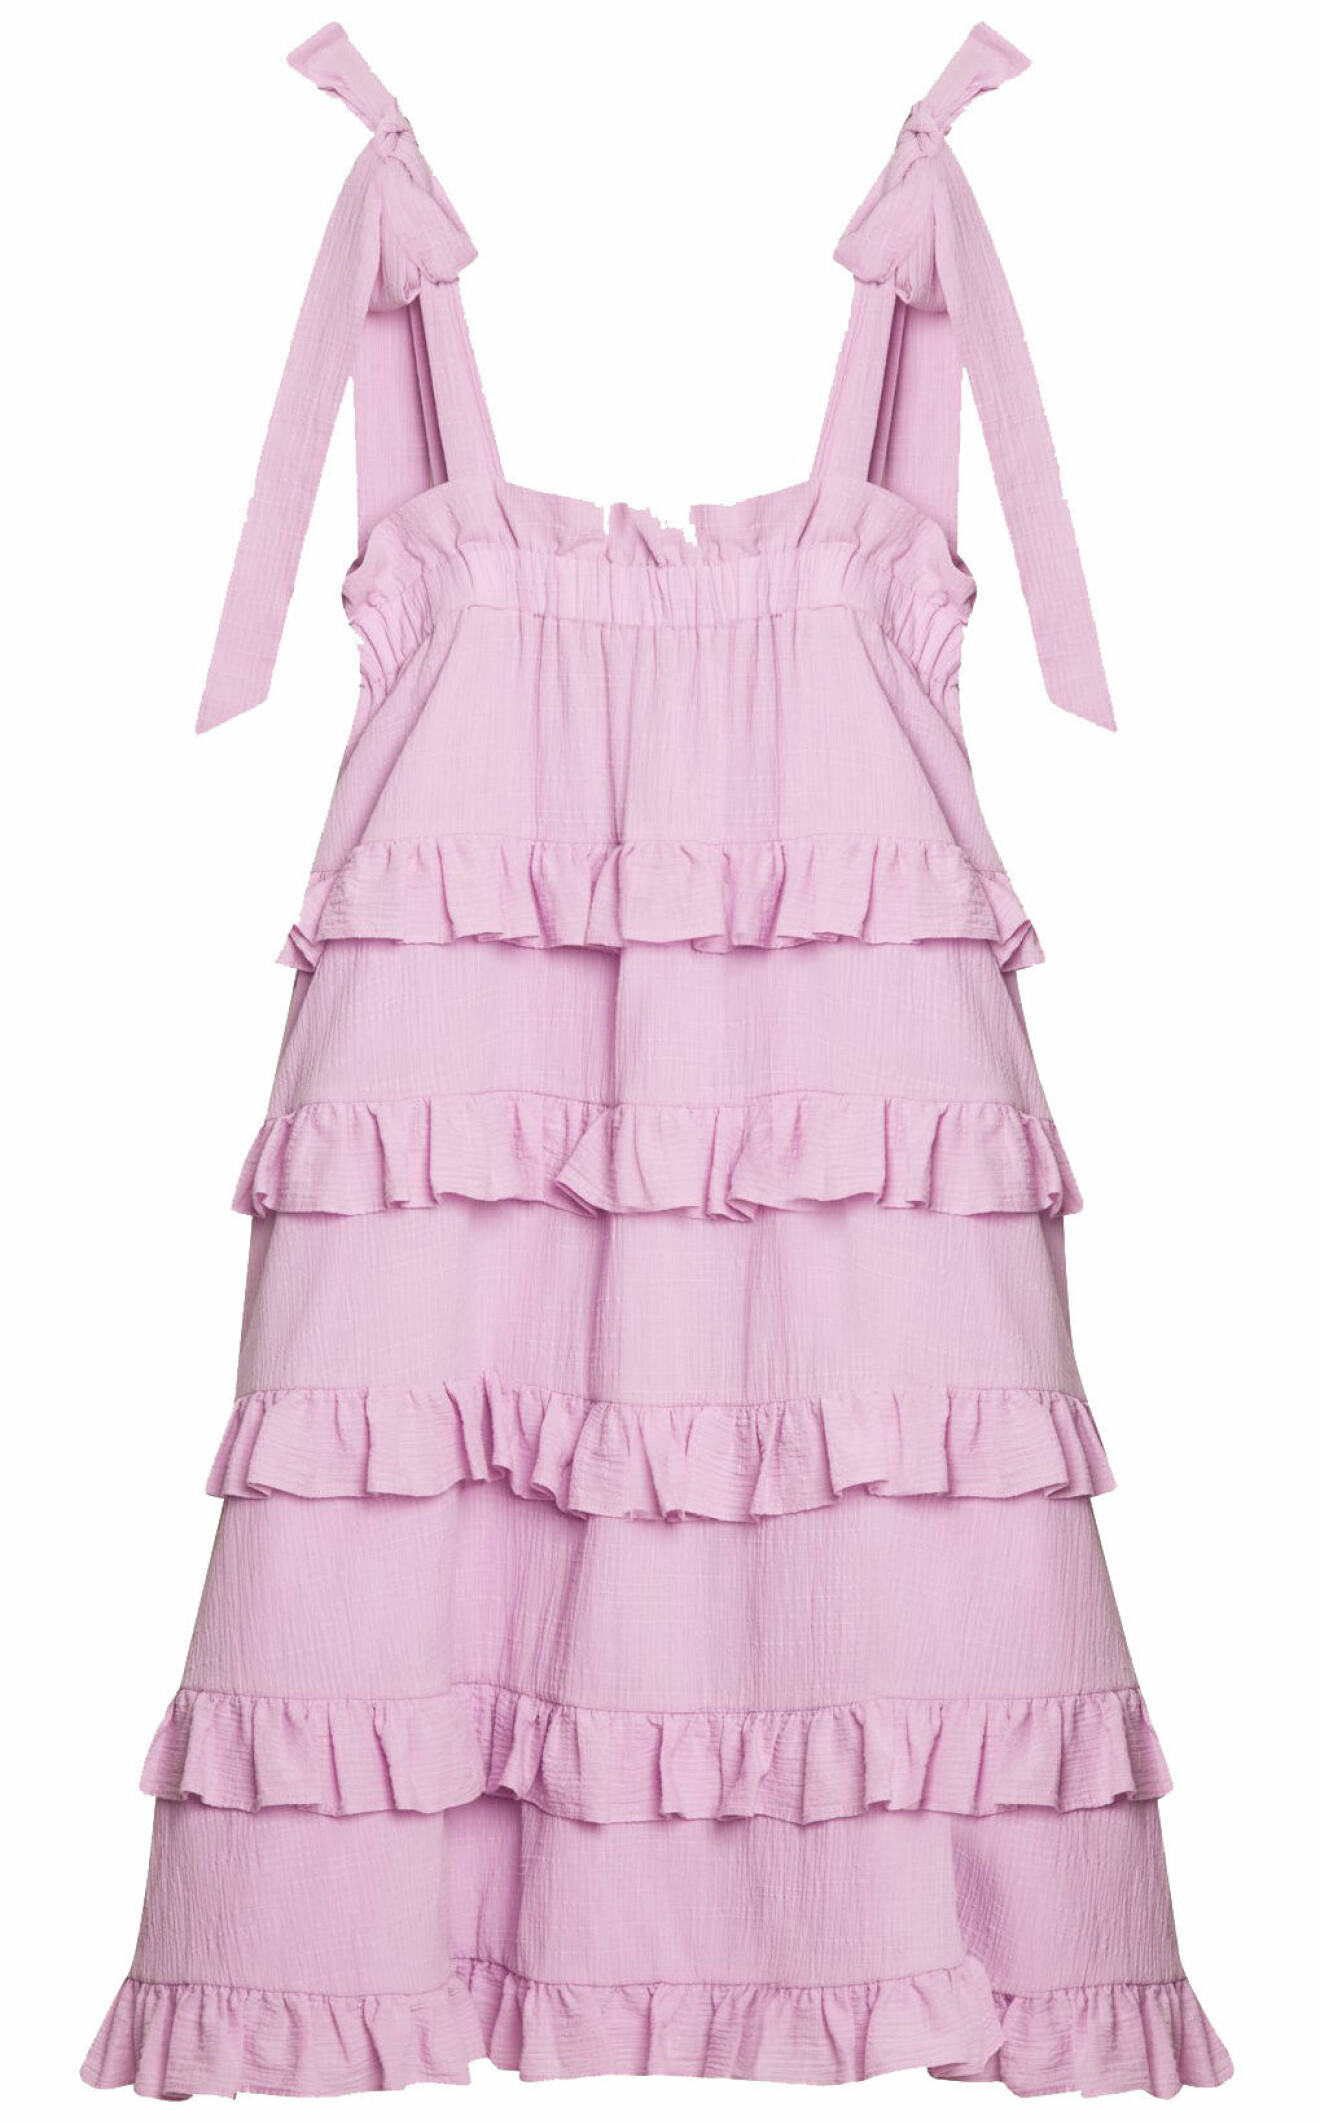 lavendellila klänning från BY Malina.